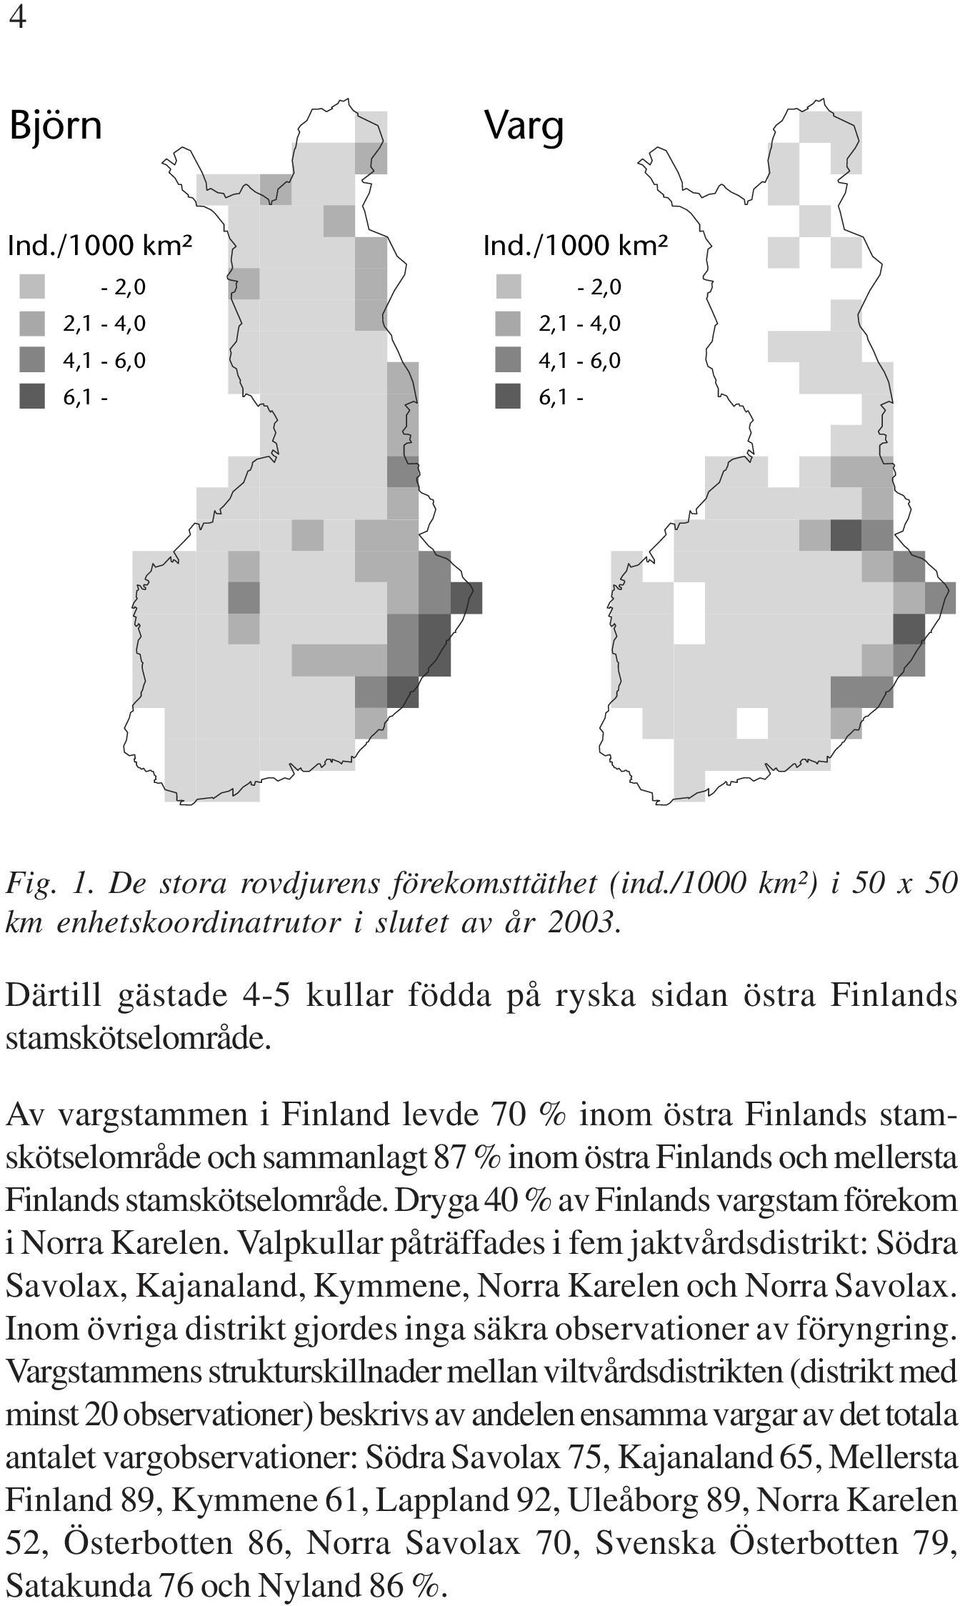 Av vargstammen i Finland levde 70 % inom östra Finlands stamskötselområde och sammanlagt 87 % inom östra Finlands och mellersta Finlands stamskötselområde.